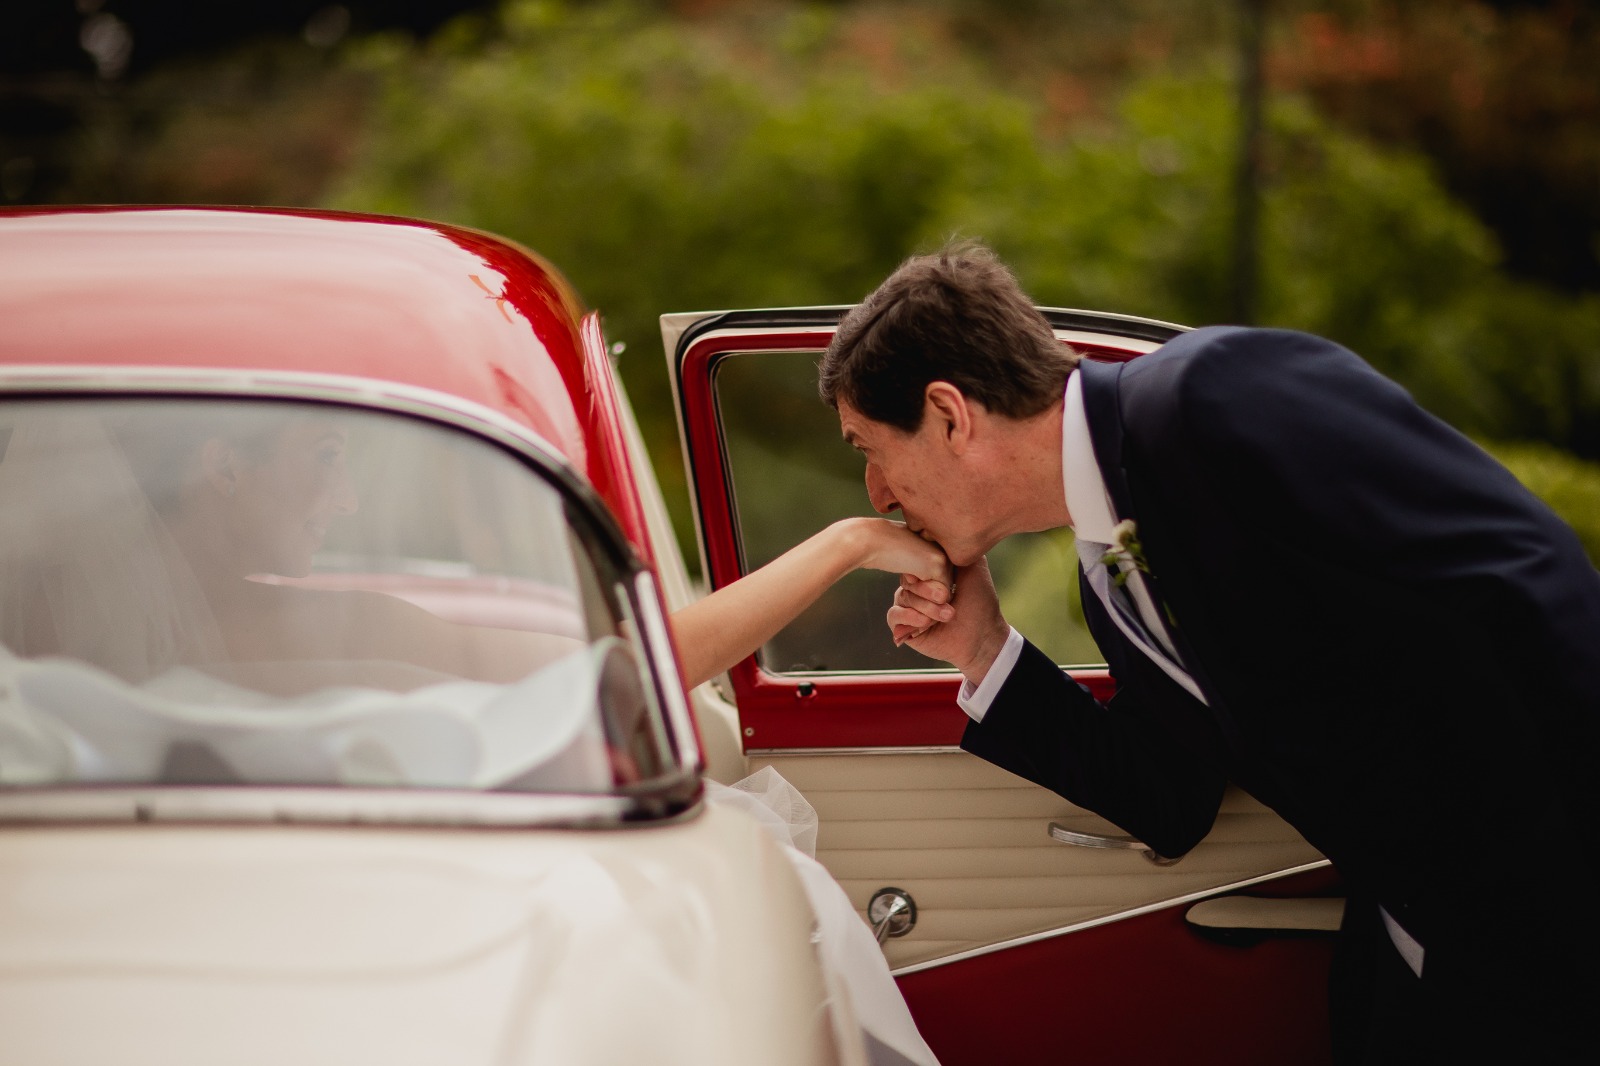 Pai da noiva beija filha ao sair do carro para cerimônia de casamento | Fotógrafos Melqui Zago Fotografia e Pam Passos 